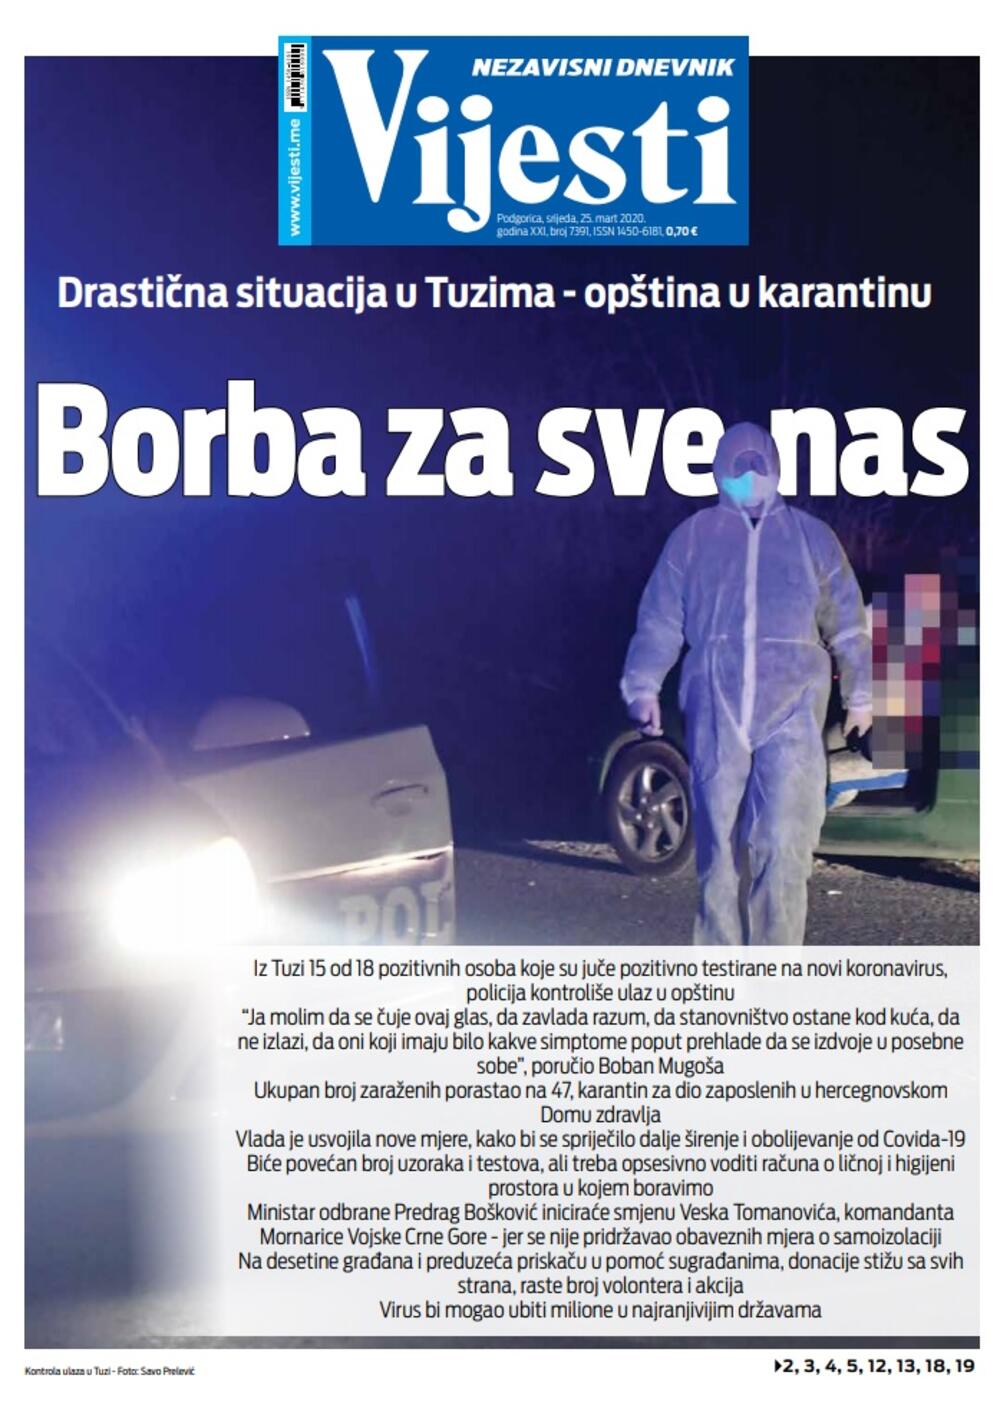 Naslovna strana "Vijesti" za 25. mart 2020. godine, Foto: Vijesti